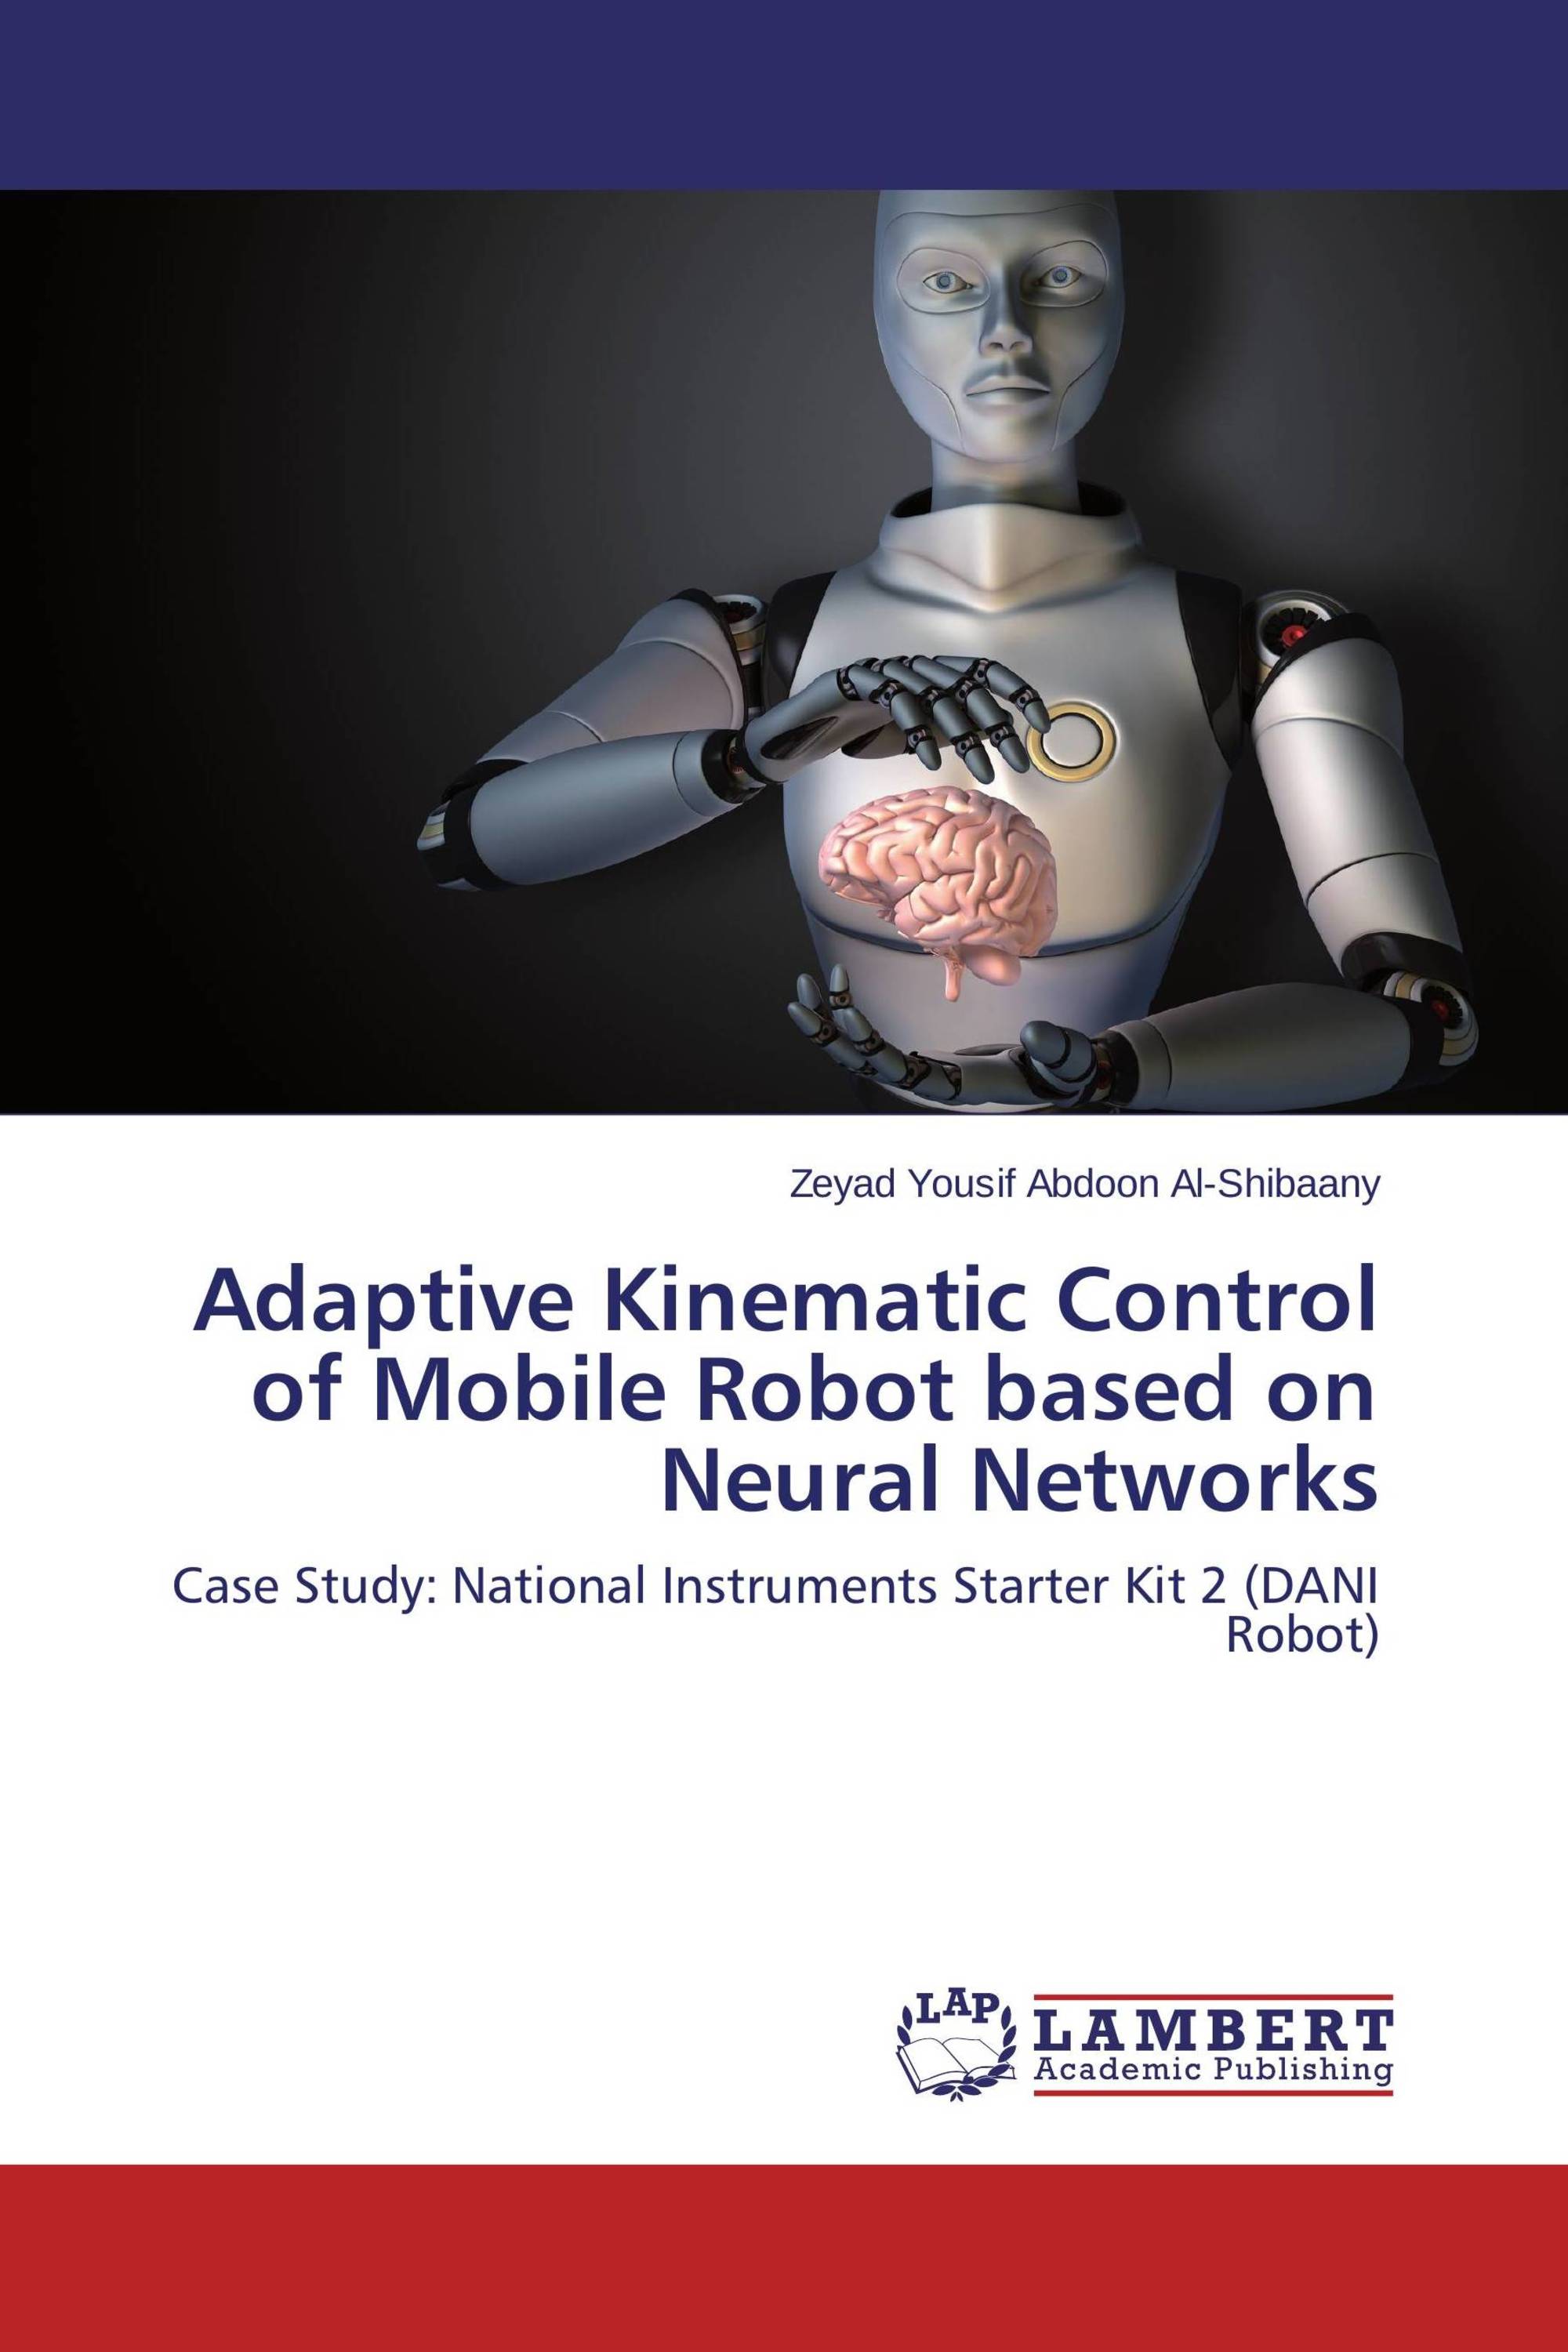 robot of kinematic